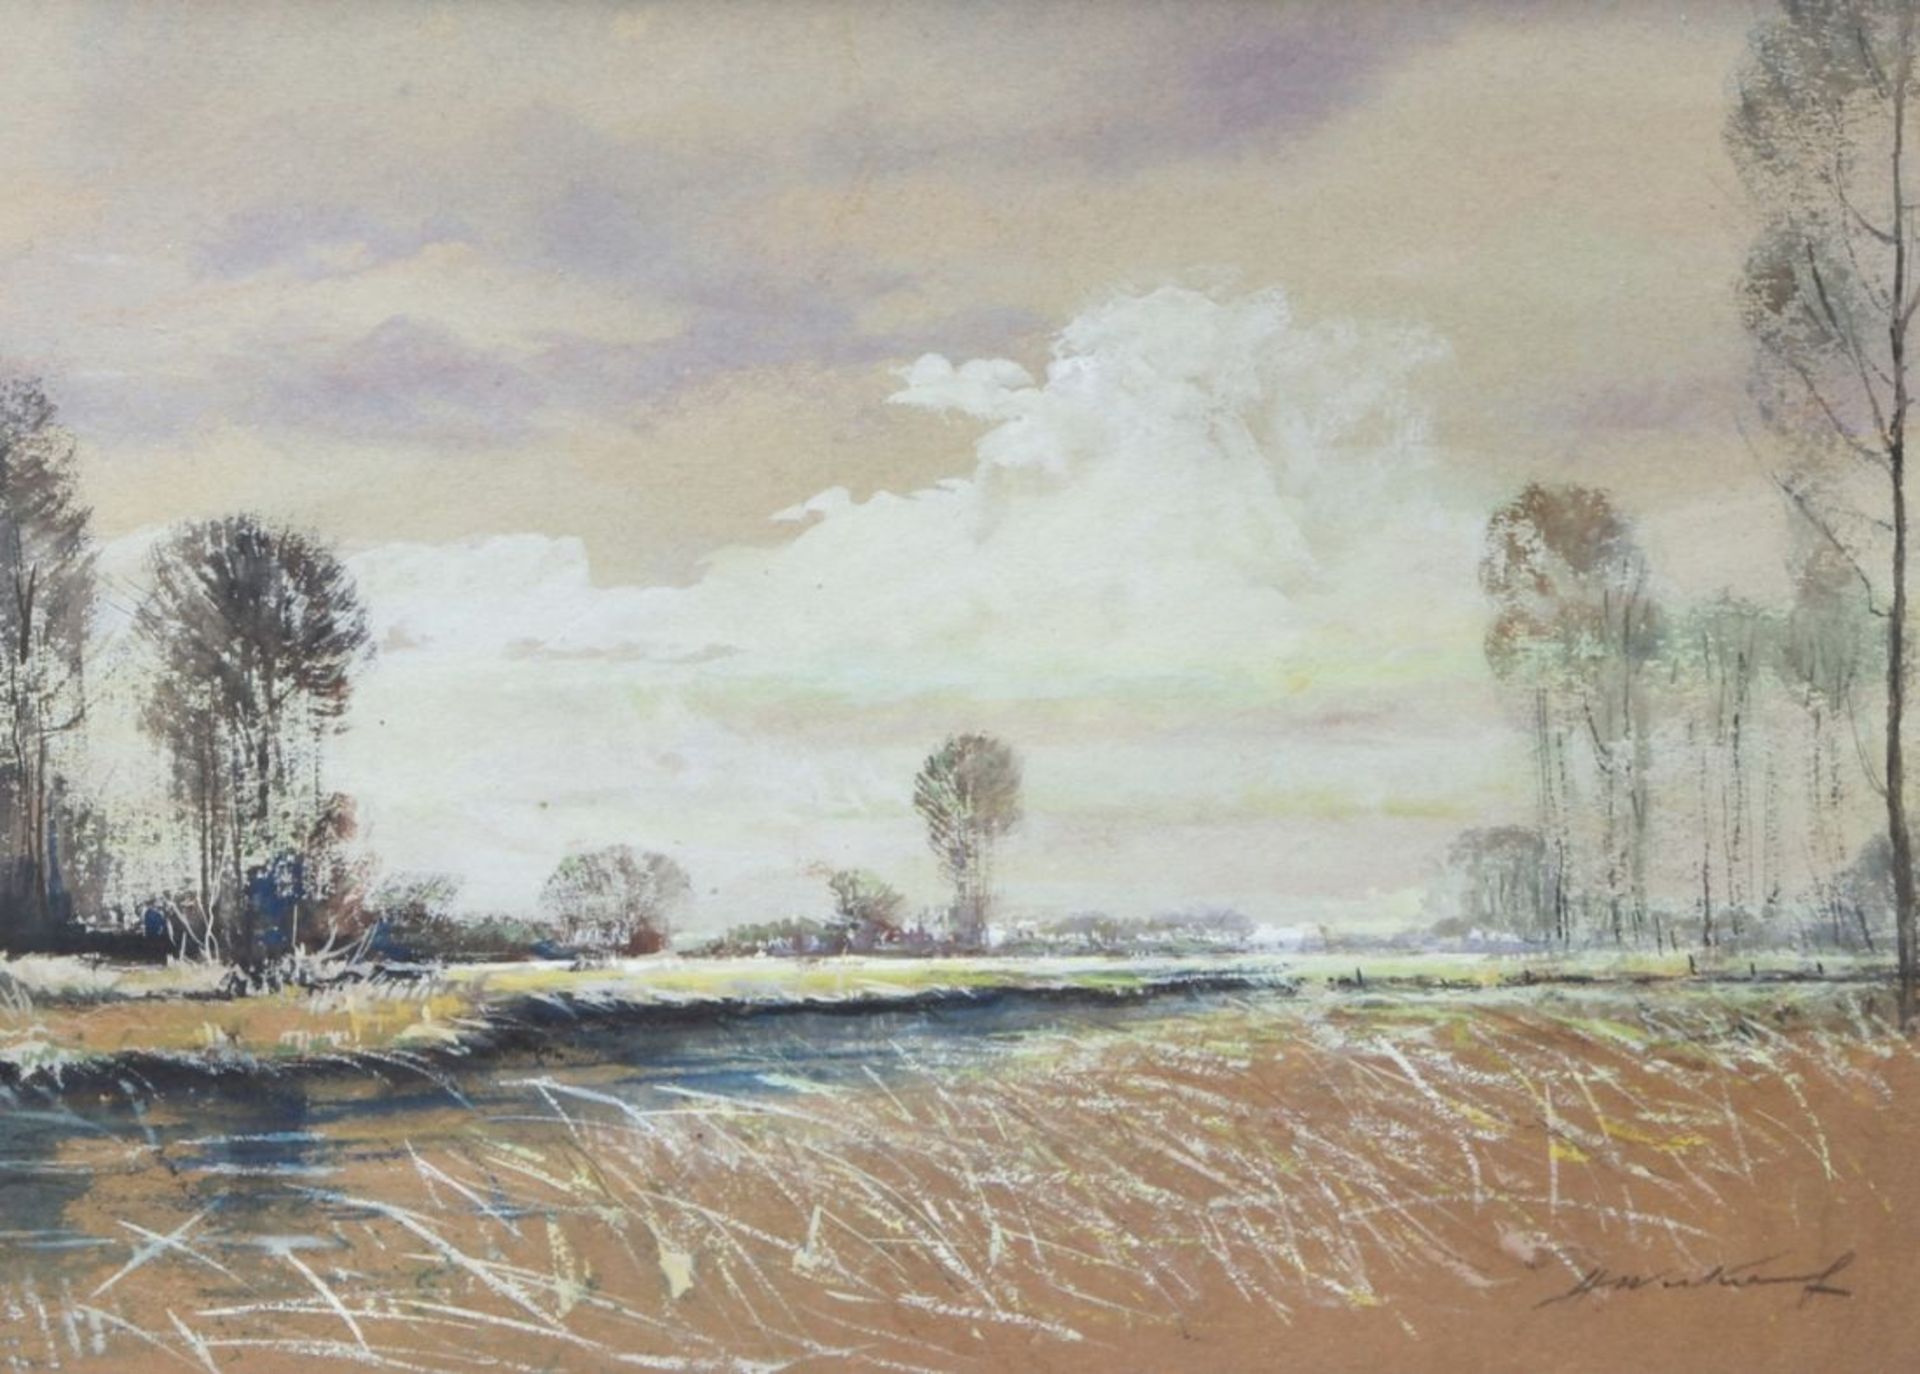 Unleserlich signierender Maler, Mitte 20. Jh. "Weite Landschaft", Mischtechnik, 35 x 48 cm<